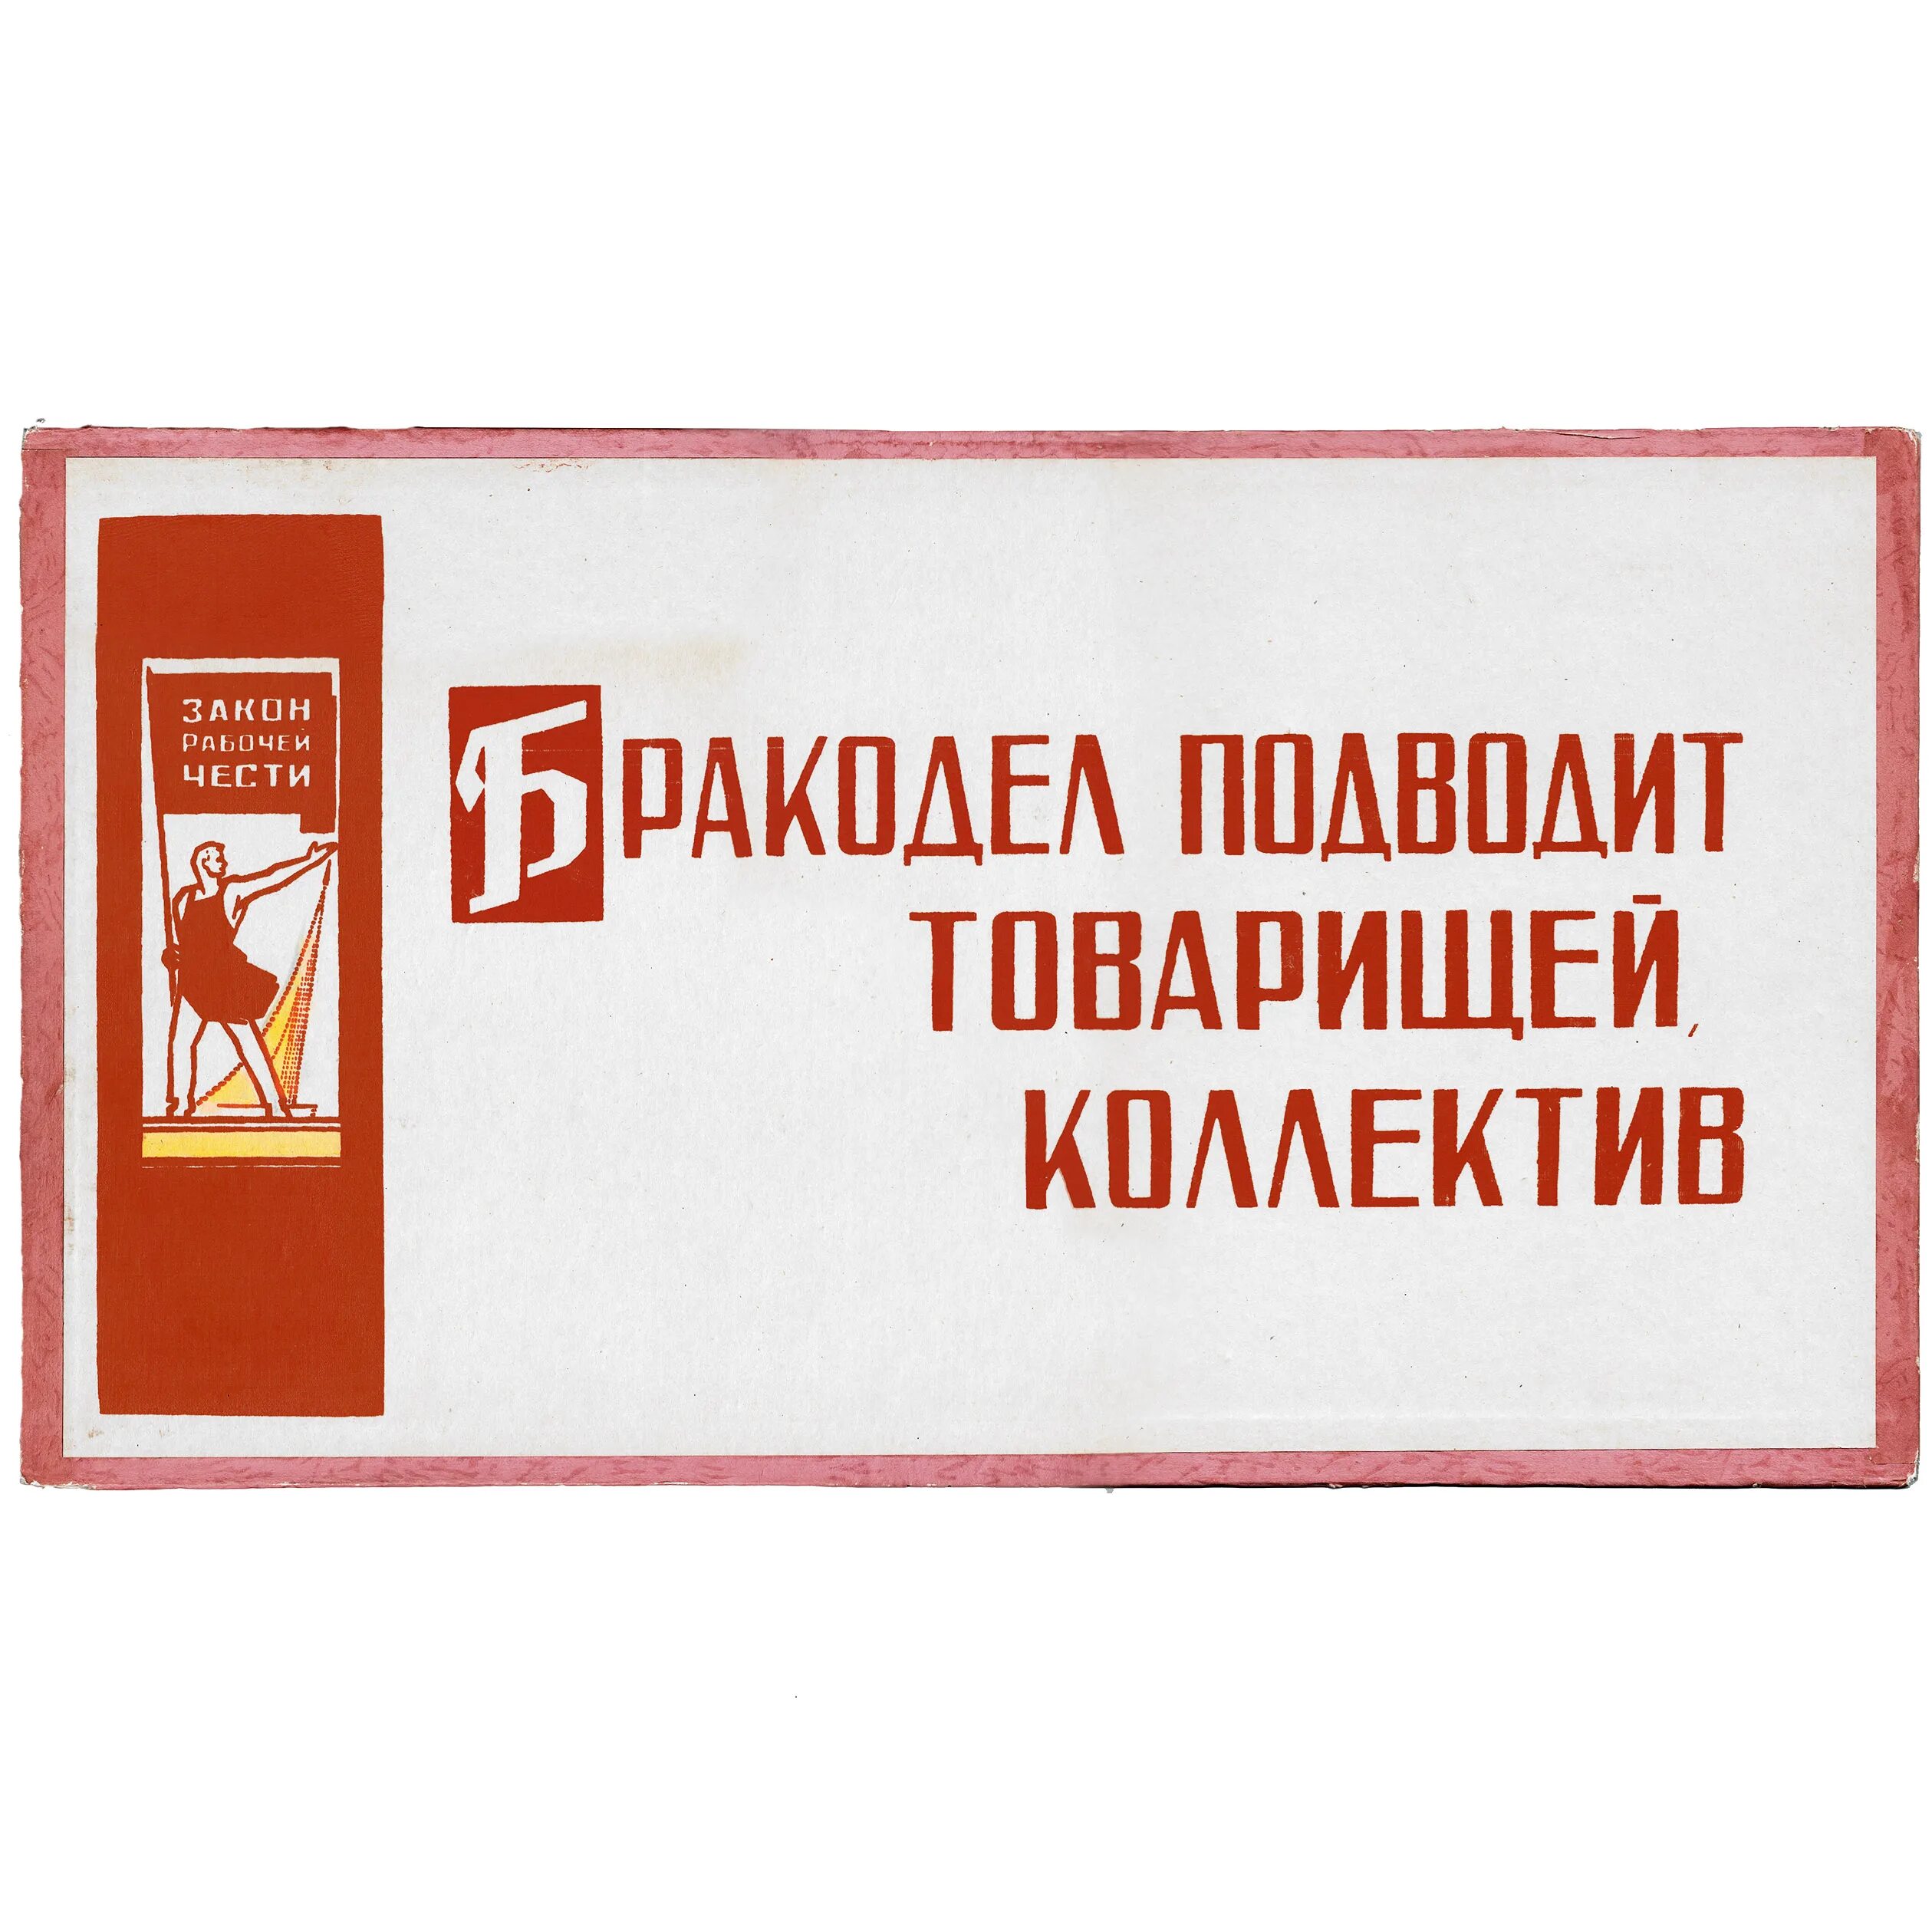 Лозунг работника. Советские лозунги и плакаты. Советские лозунги на производстве. Советские лозунги на заводах. Советские плакаты про качество продукции.